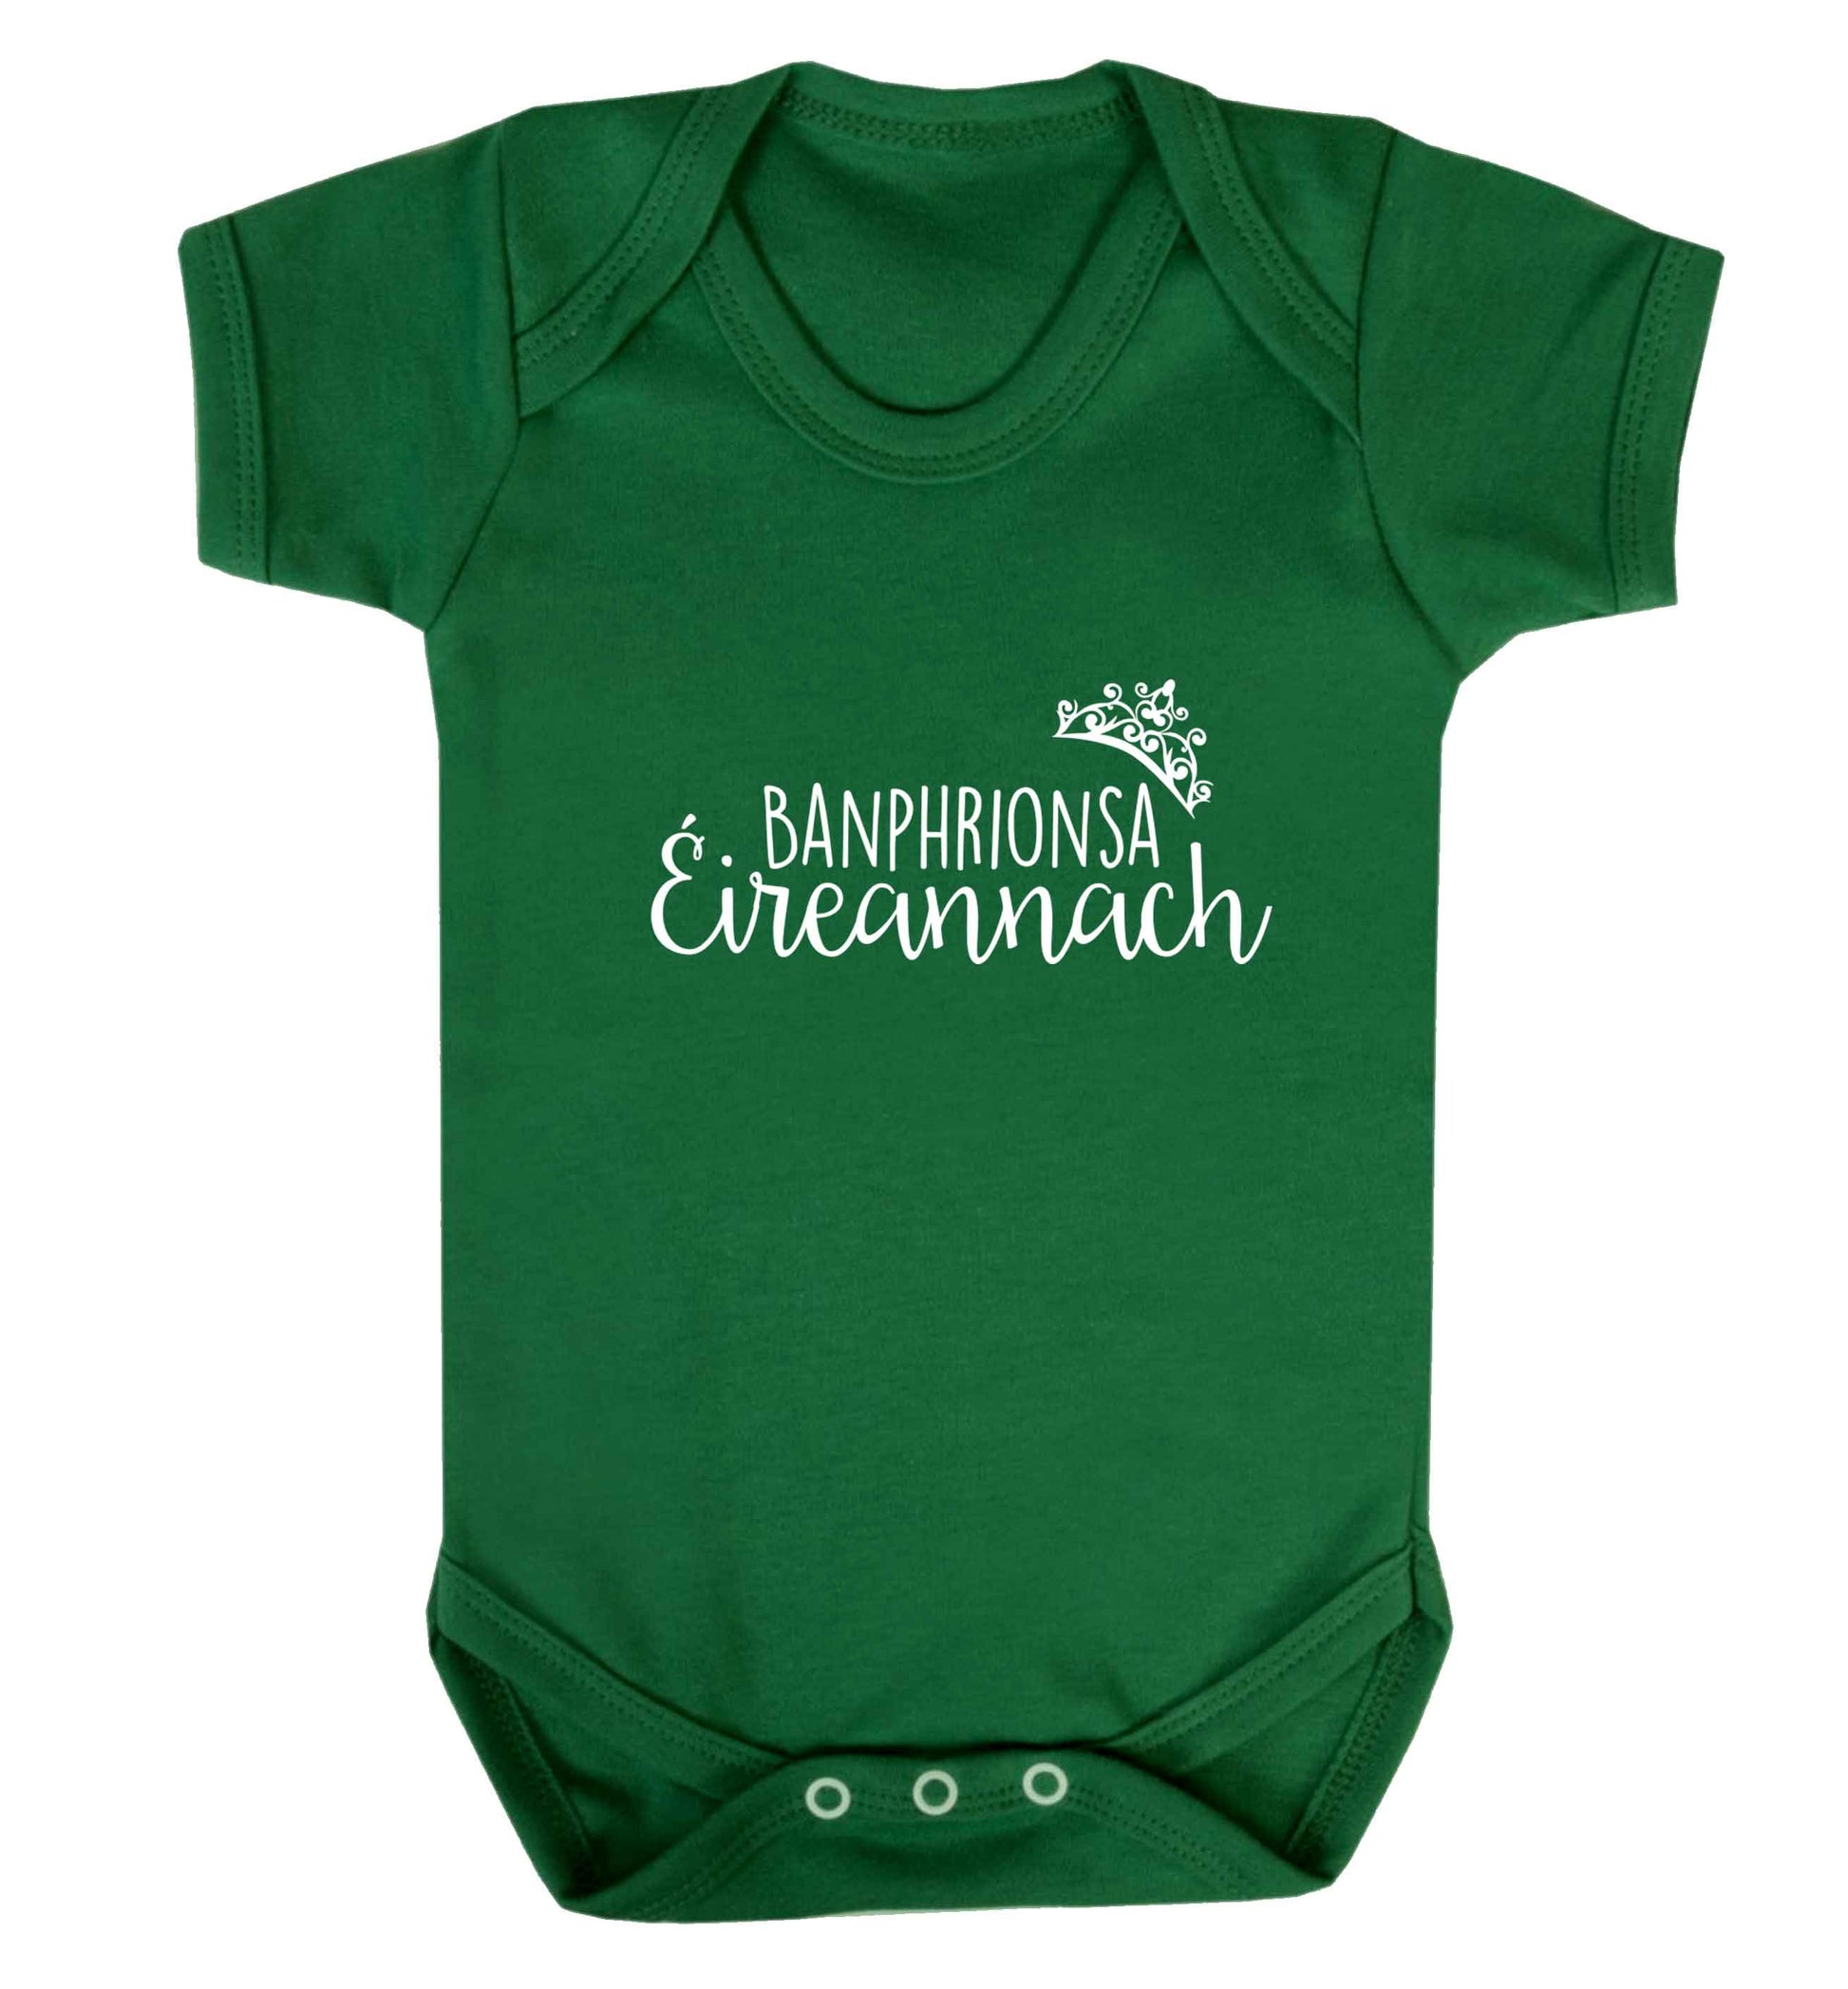 Banphrionsa eireannach baby vest green 18-24 months